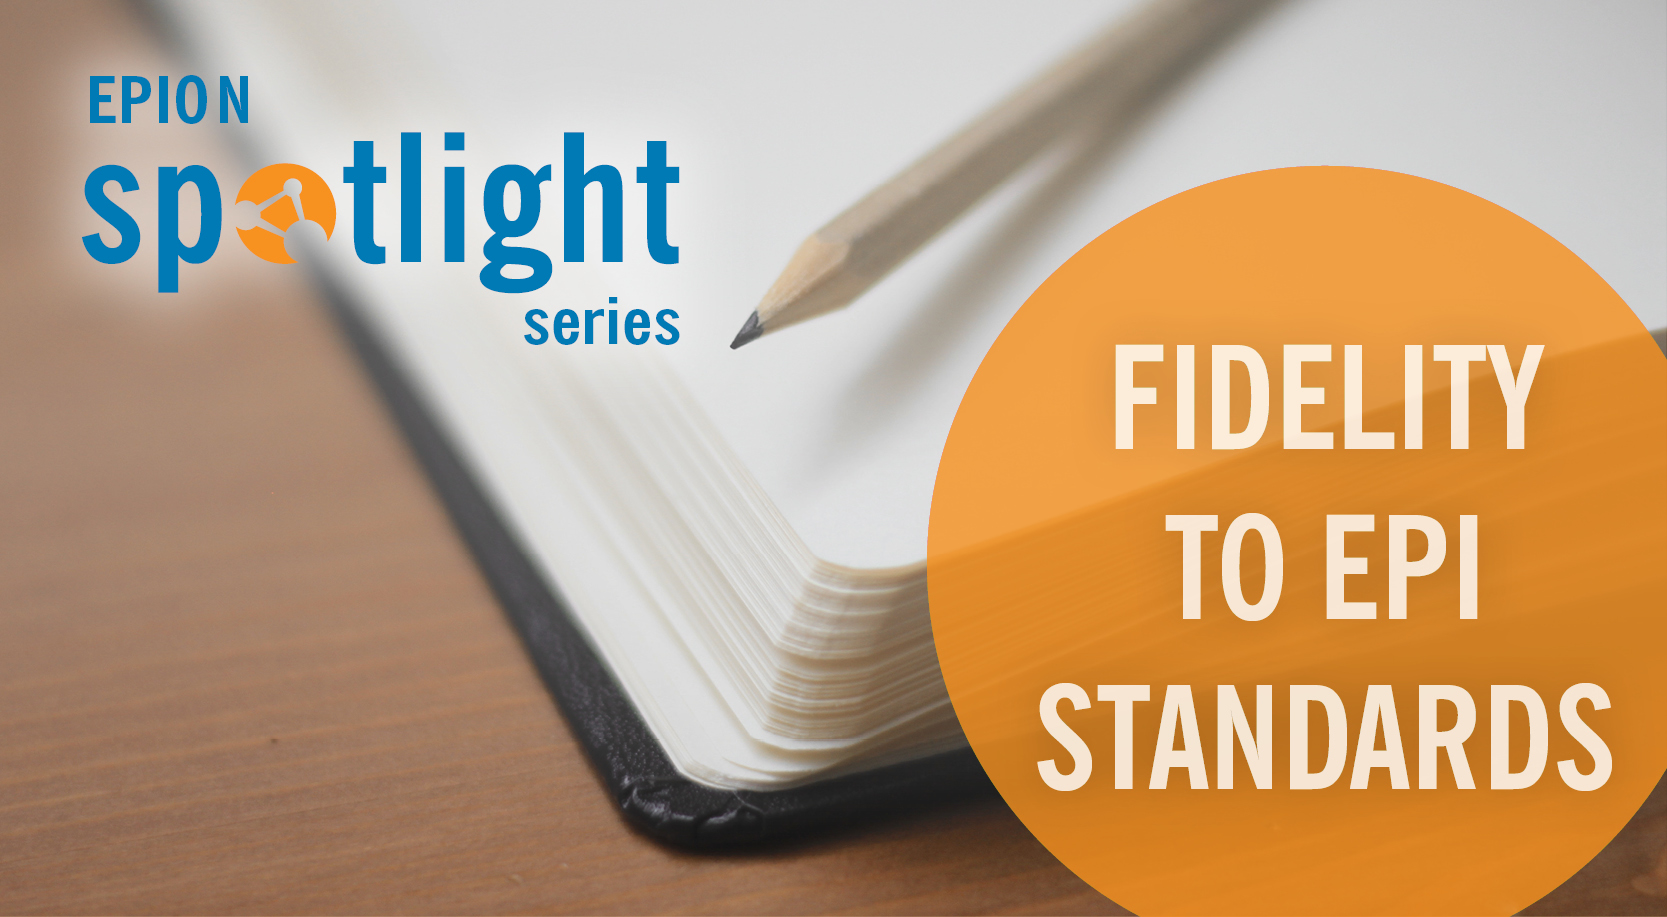 EPION Spotlight on Fidelity to EPI Standards